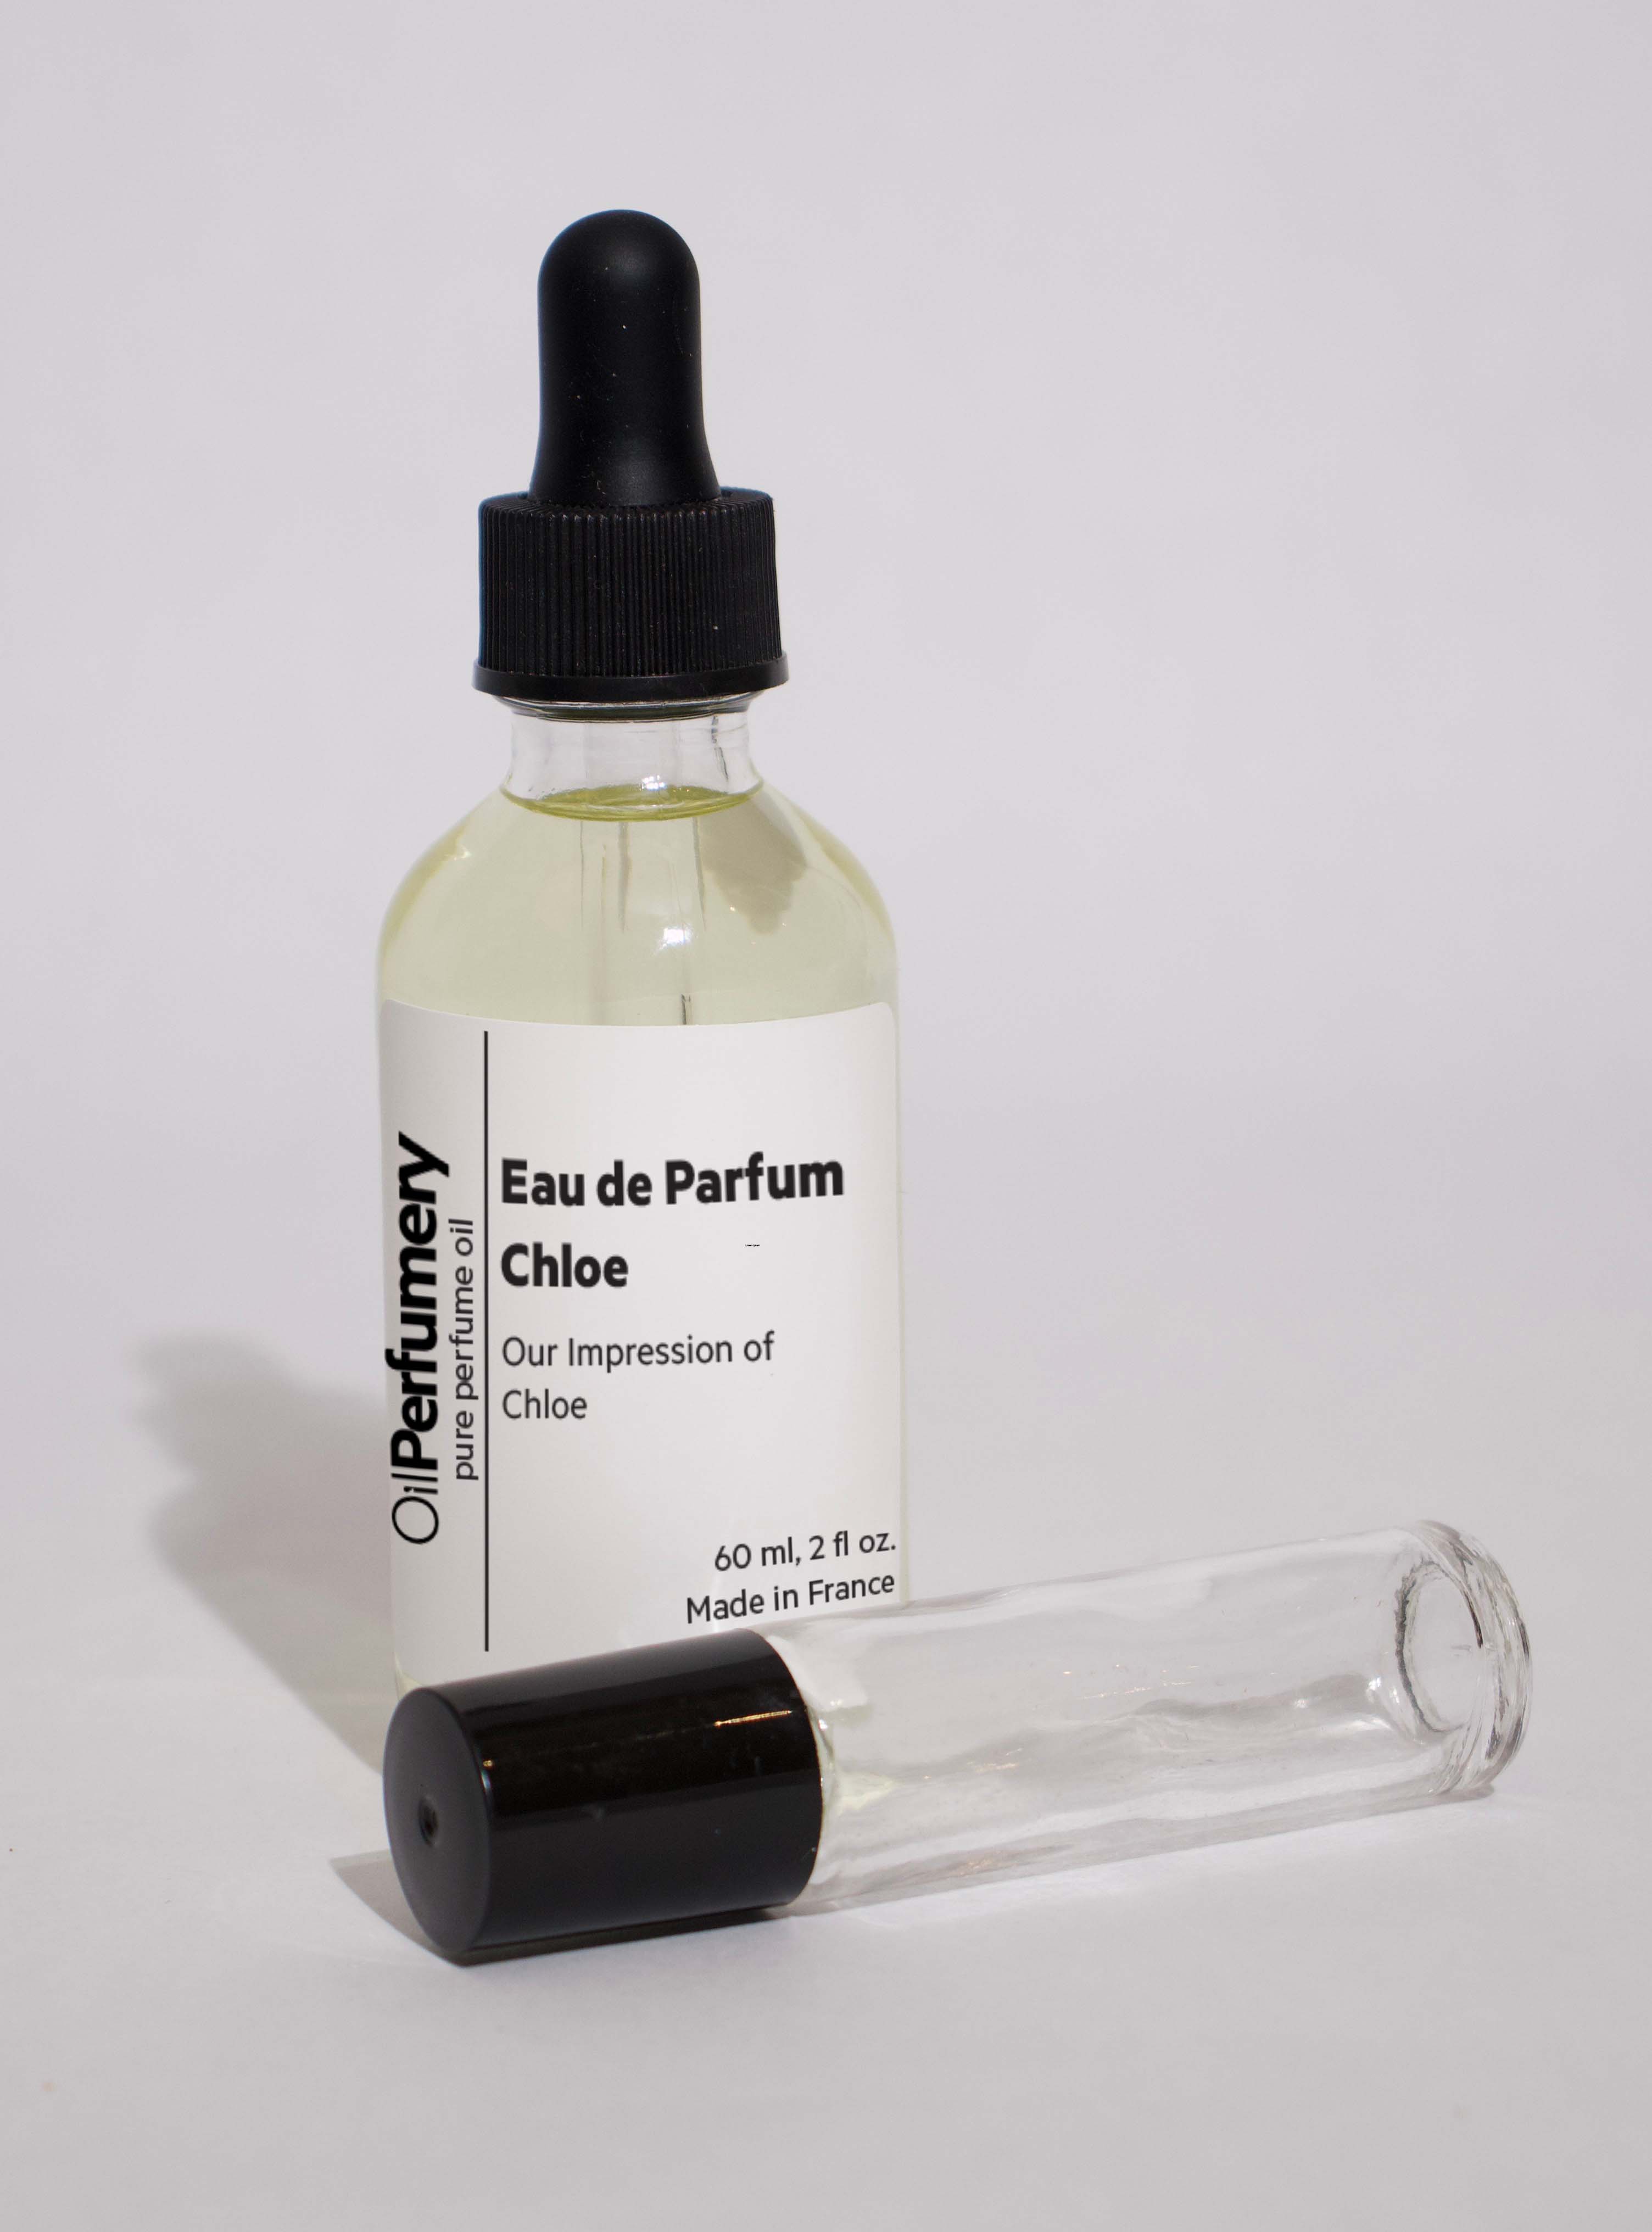 Oil Perfumery Impression of Chloe - Eau de Parfum Chloe